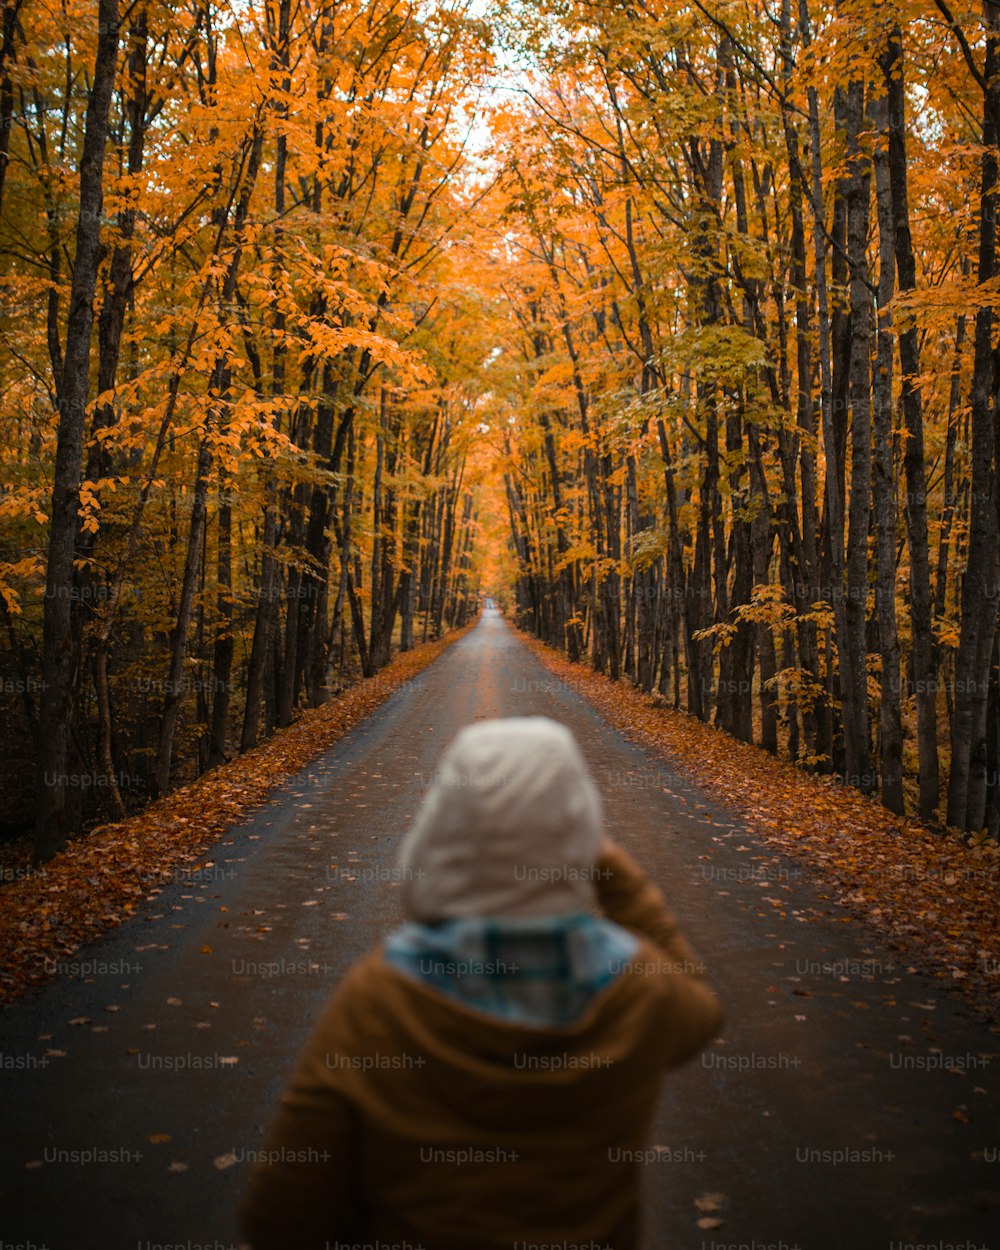 Una persona parada en una carretera rodeada de árboles